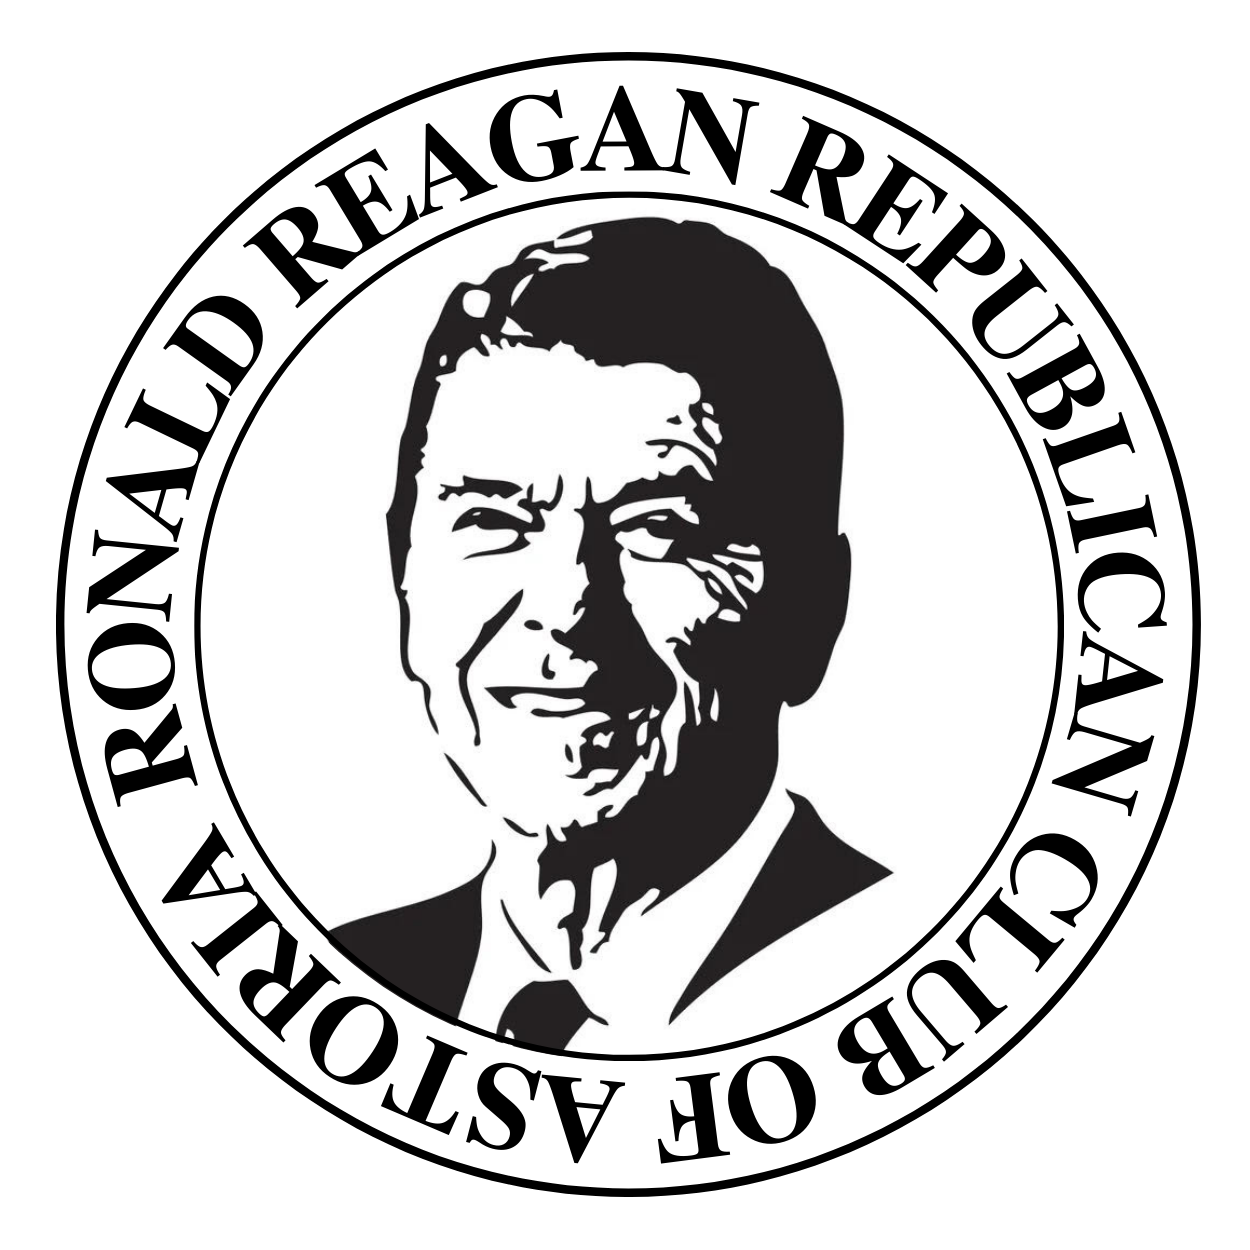 Ronald Reagan Republican Club